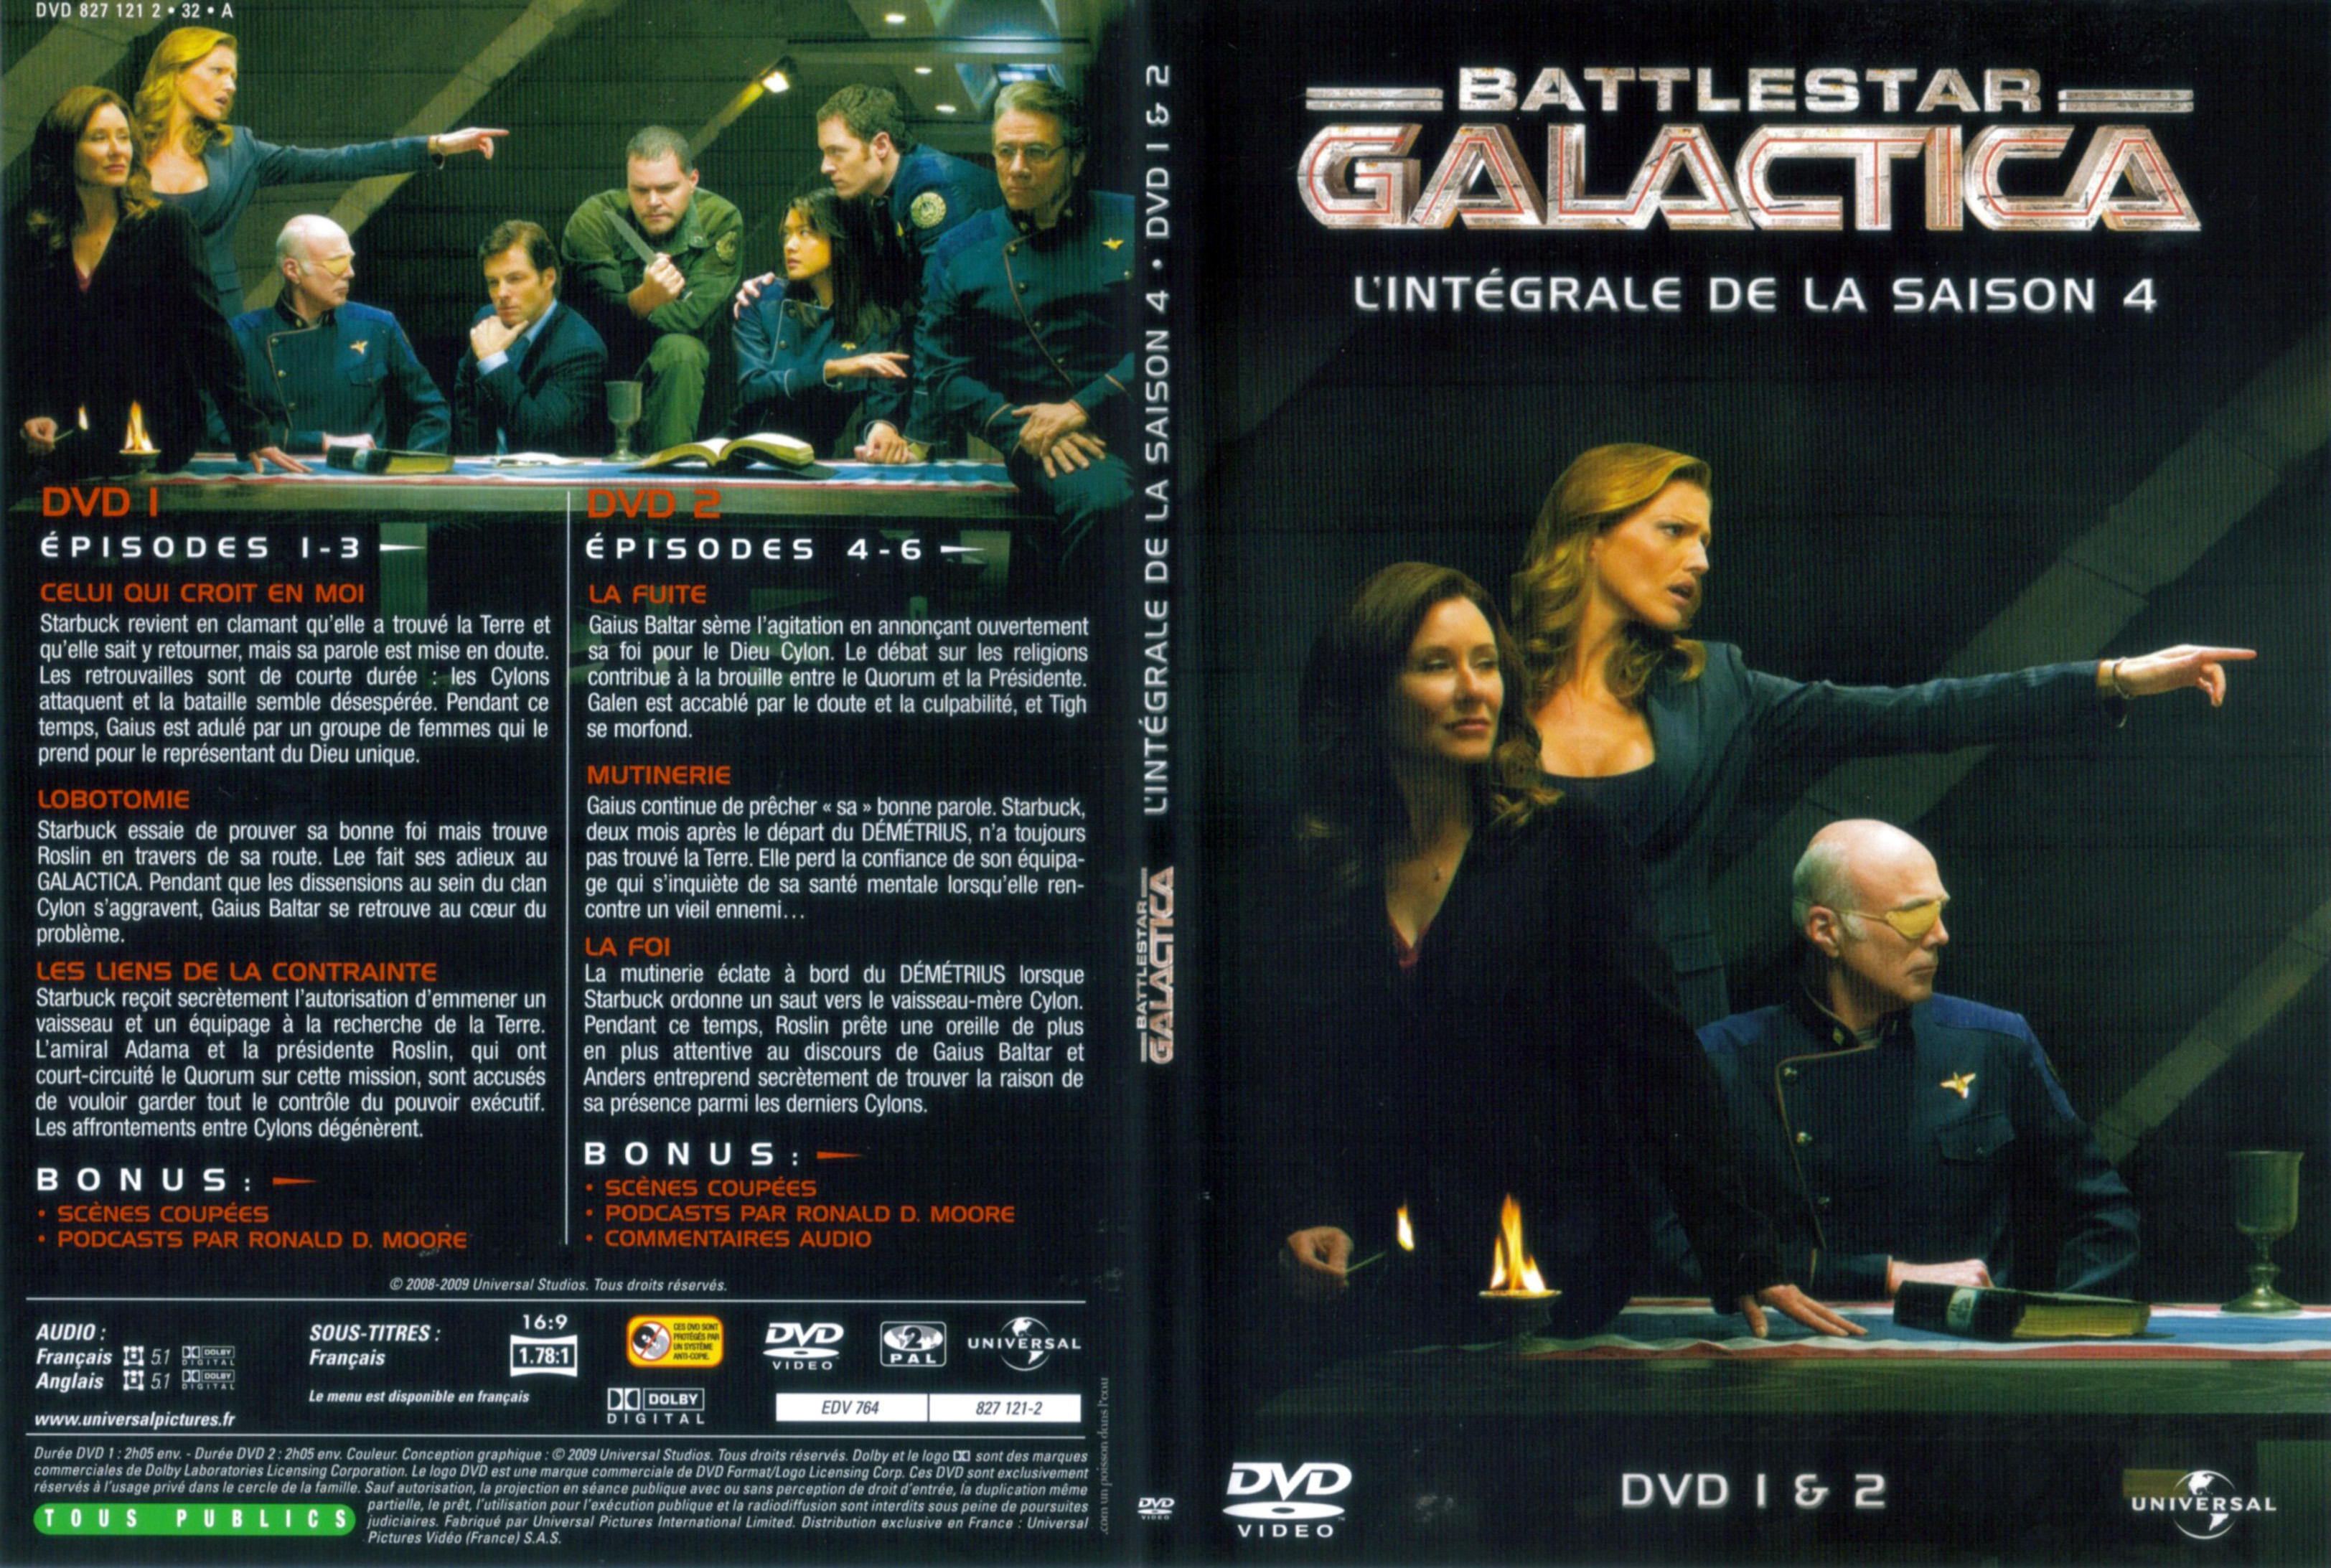 Jaquette DVD Battlestar Galactica Saison 4 DVD 1